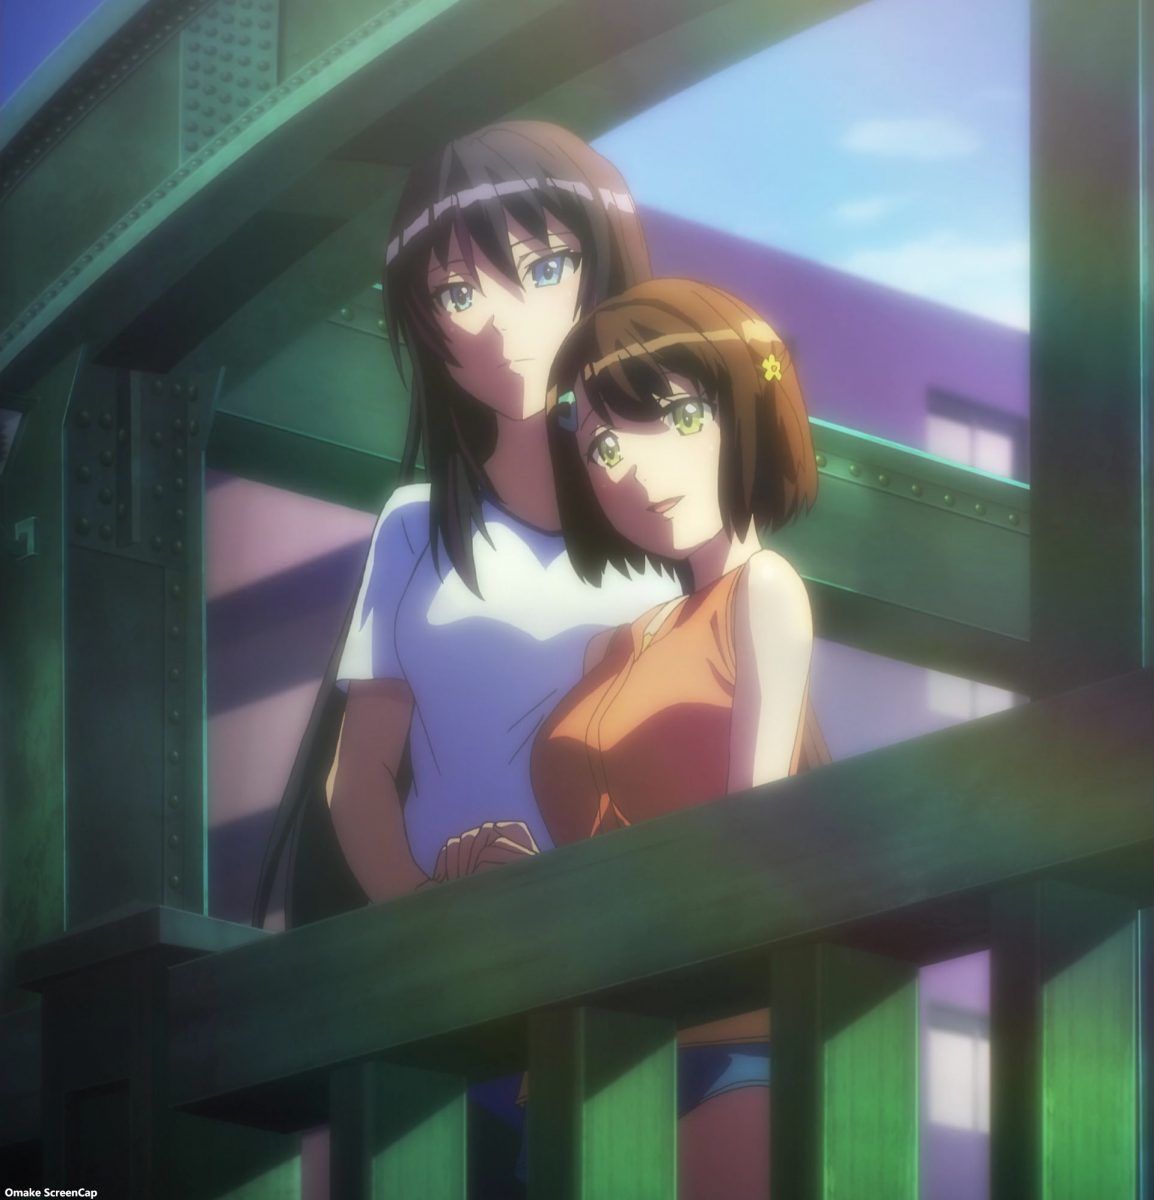 Kandagawa Jet Girls Episode 12 [END] Rin Misa Hold Hands